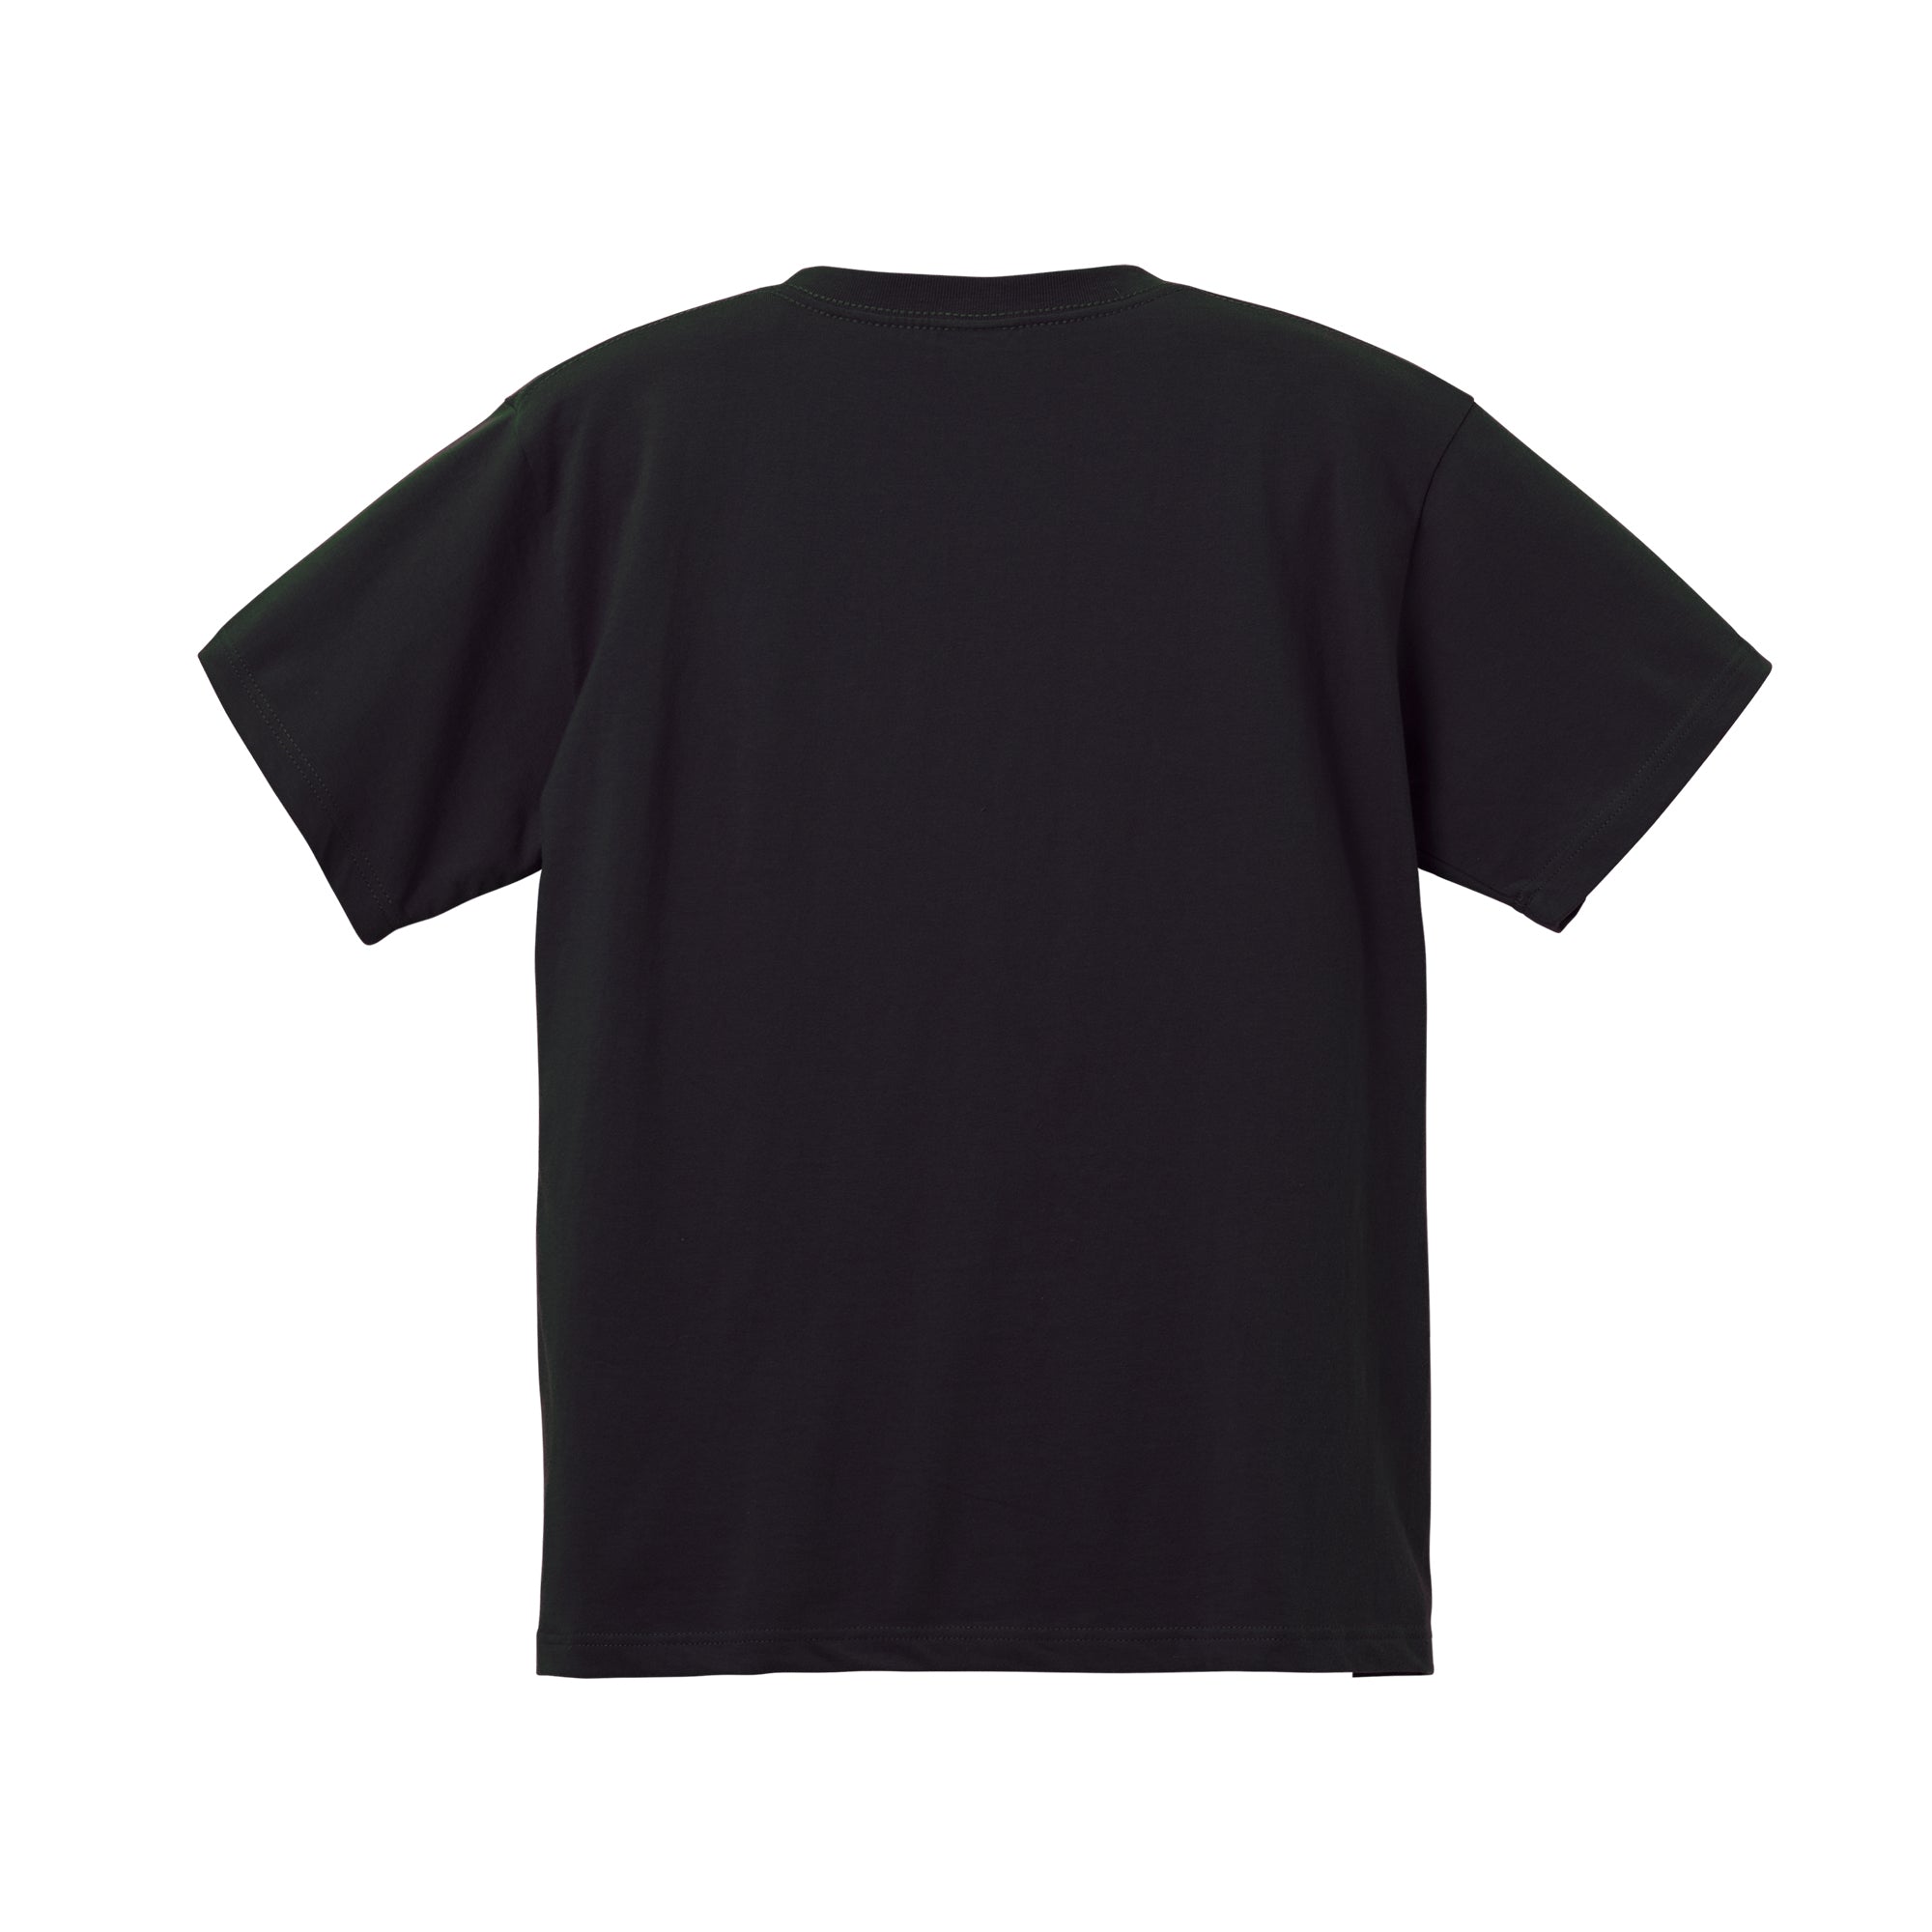 5942 - Classic heavyweight 6.2 oz T-shirt - Black x 2